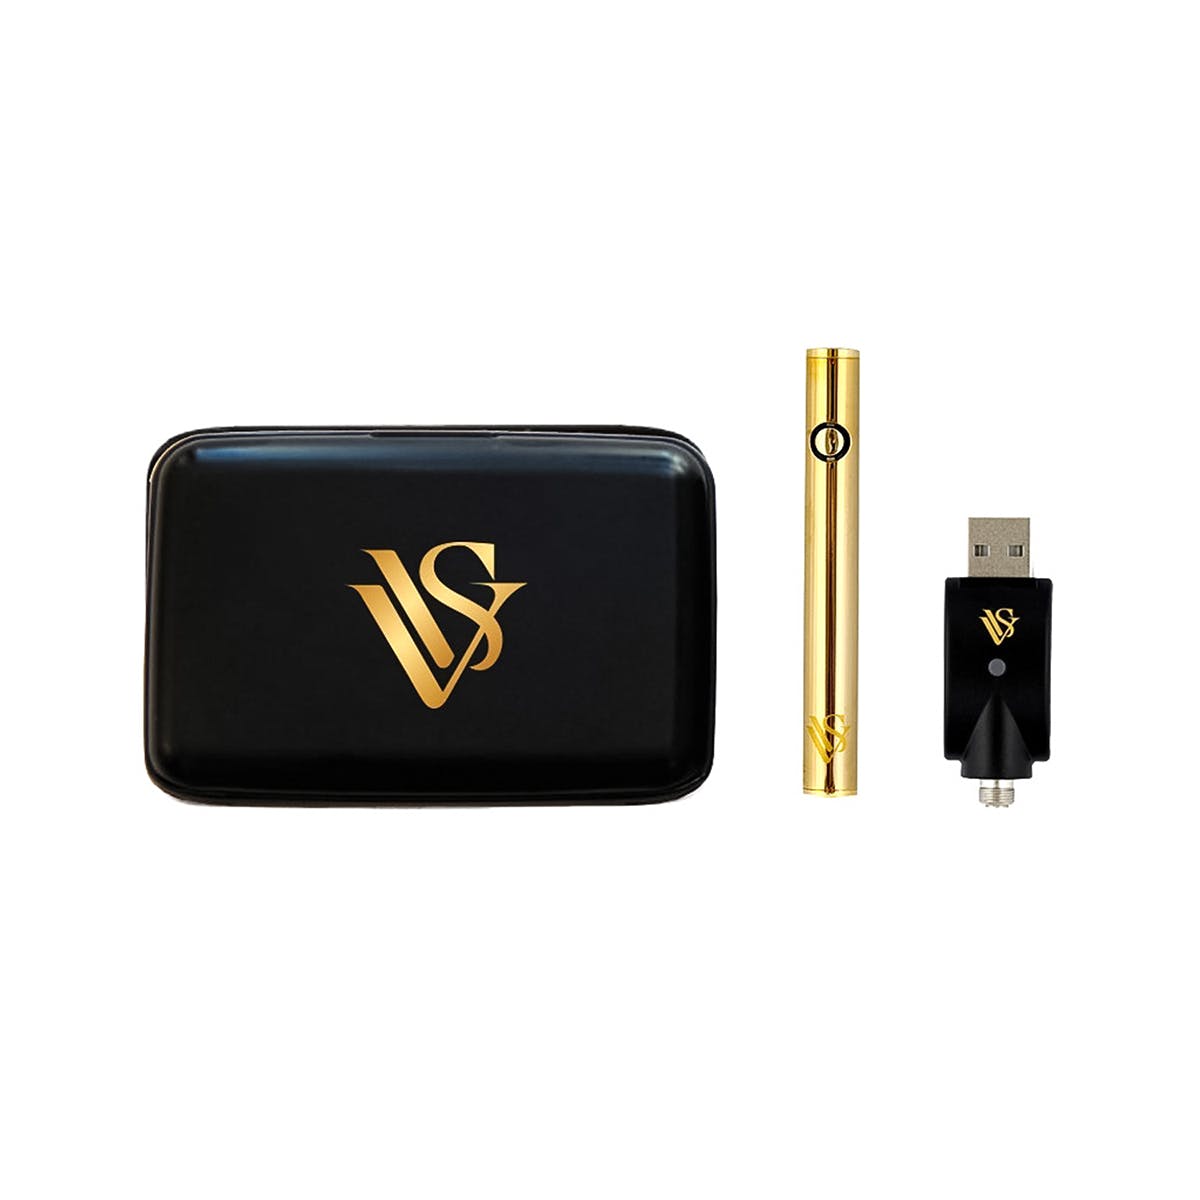 VVS Battery Kit - Gold